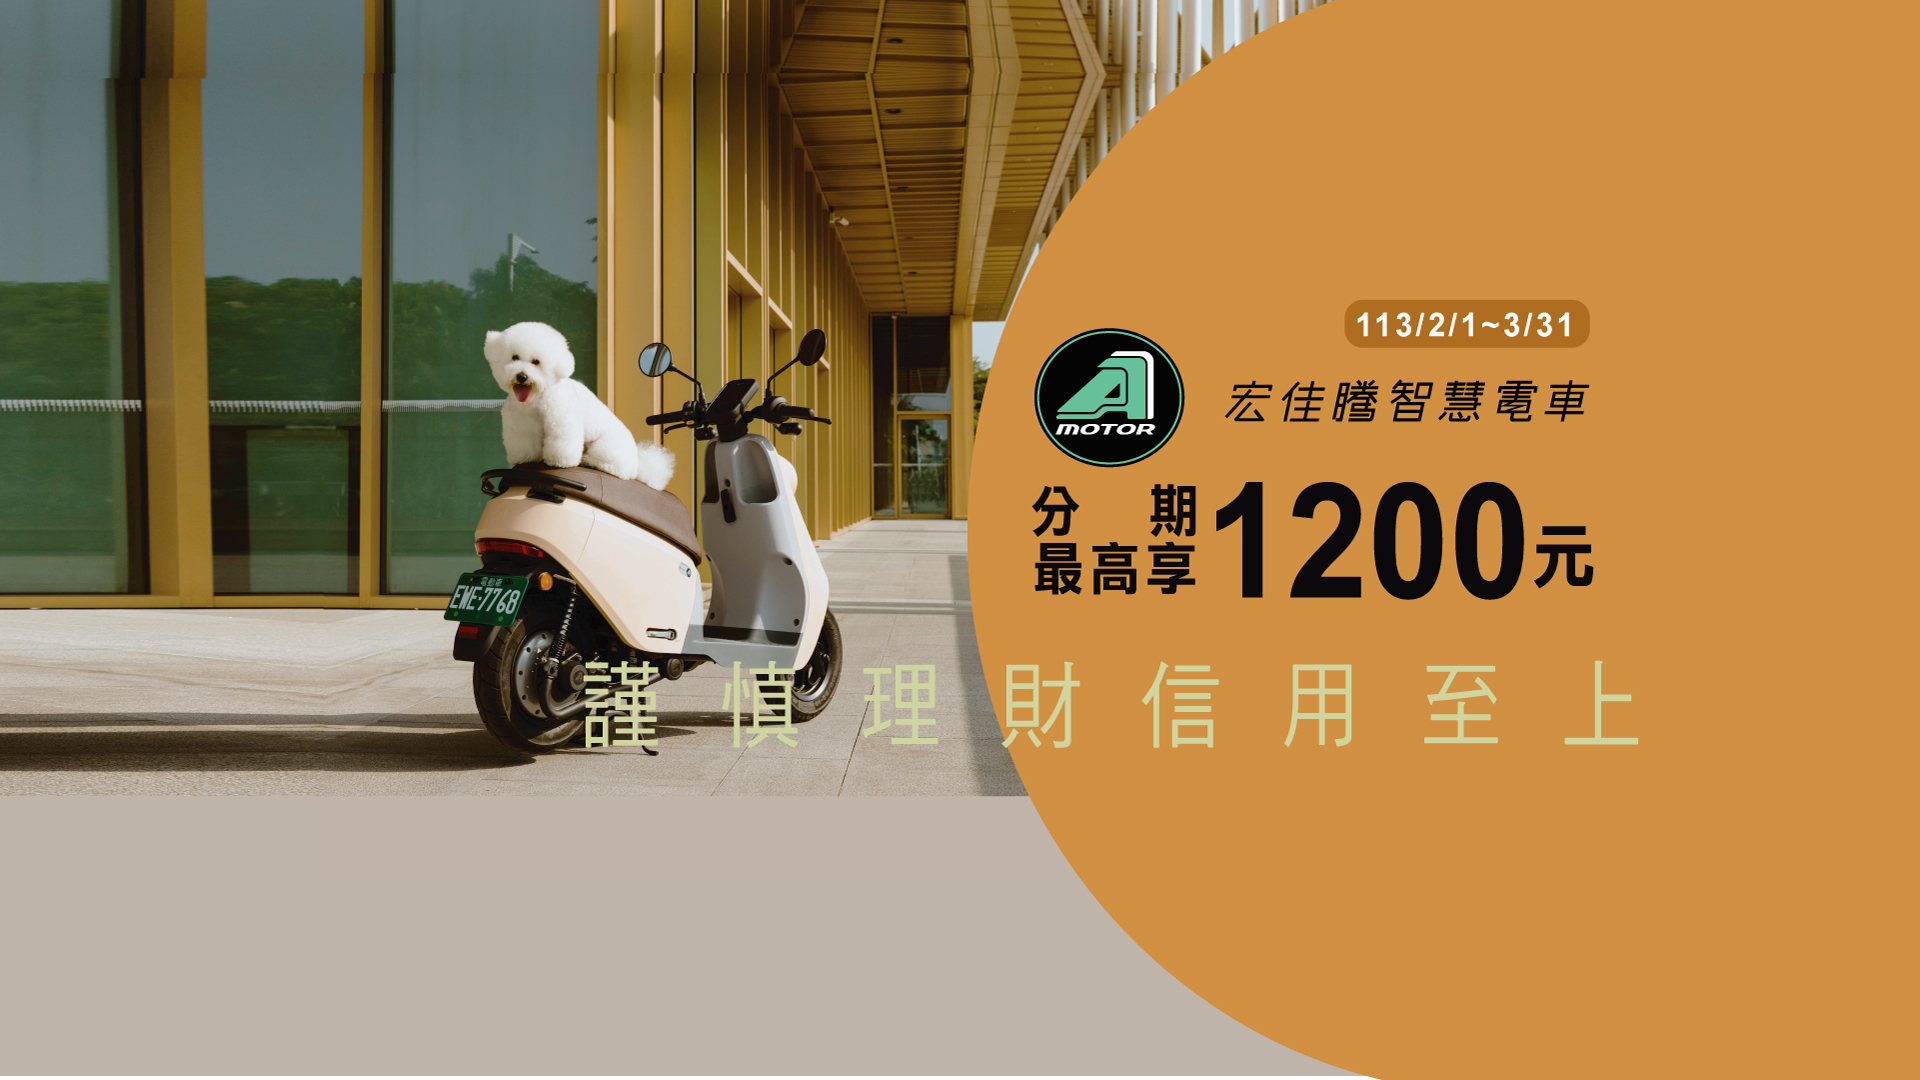 「宏佳騰智慧電車 分期最高享1200元」Banner